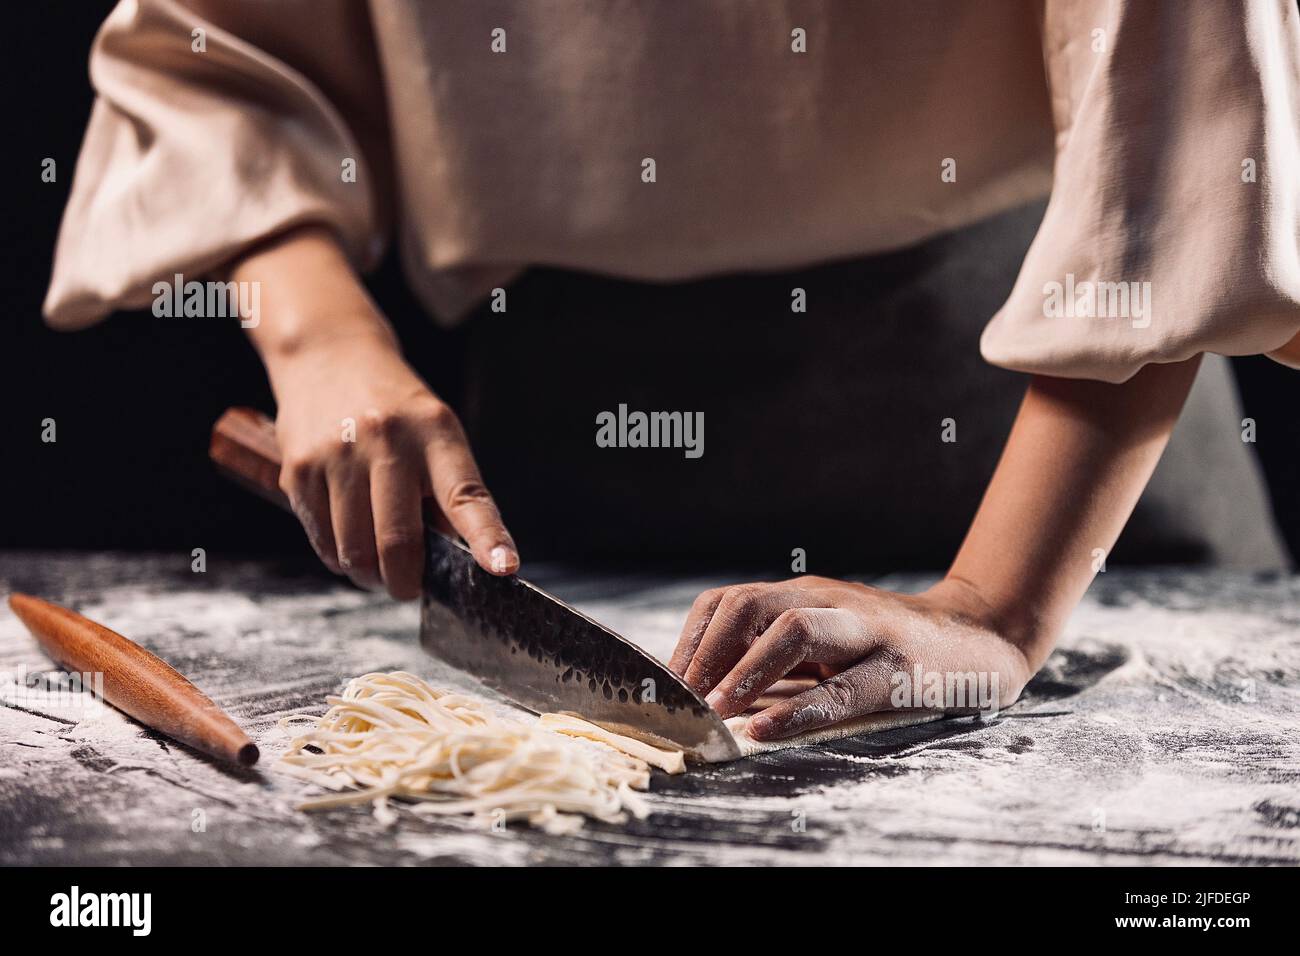 Cuchillo de cocina chino foto de archivo. Imagen de madera - 11947360